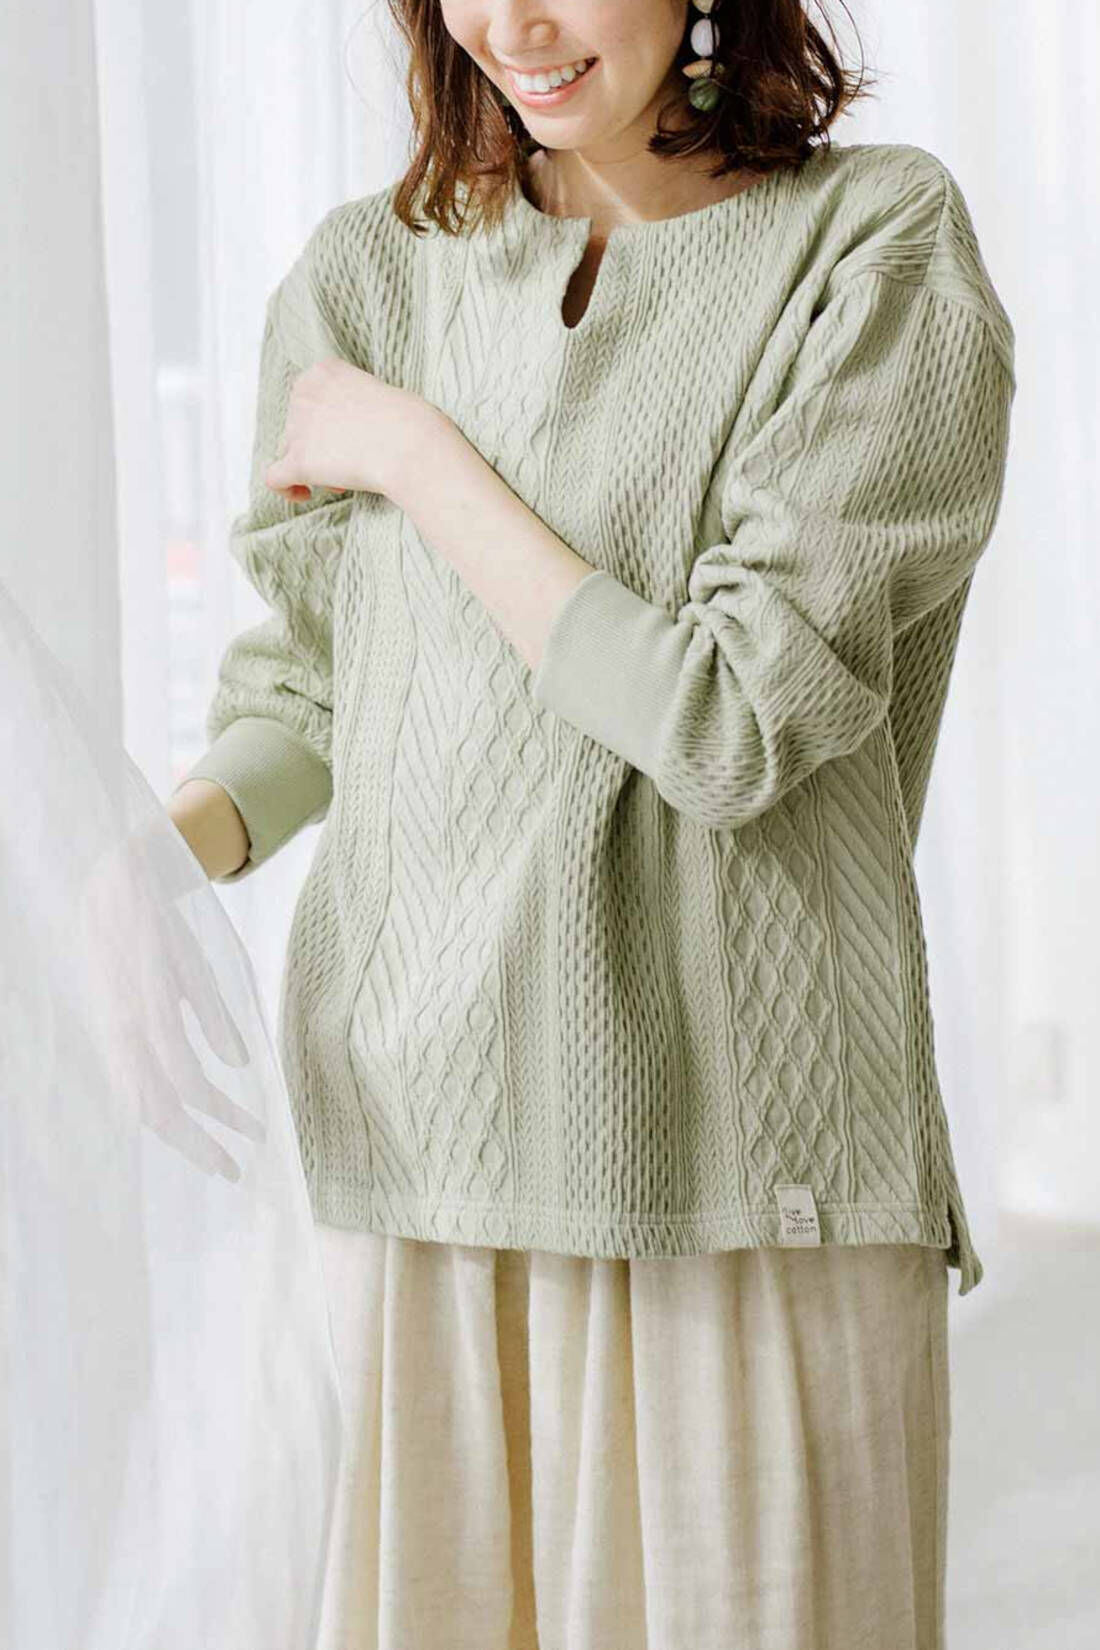 Real Stock|Live love cottonプロジェクト　リブ イン コンフォート　編み柄が素敵な袖口リブオーガニックコットントップス〈ホワイト〉|※着用イメージです。お届けするカラーとは異なります。